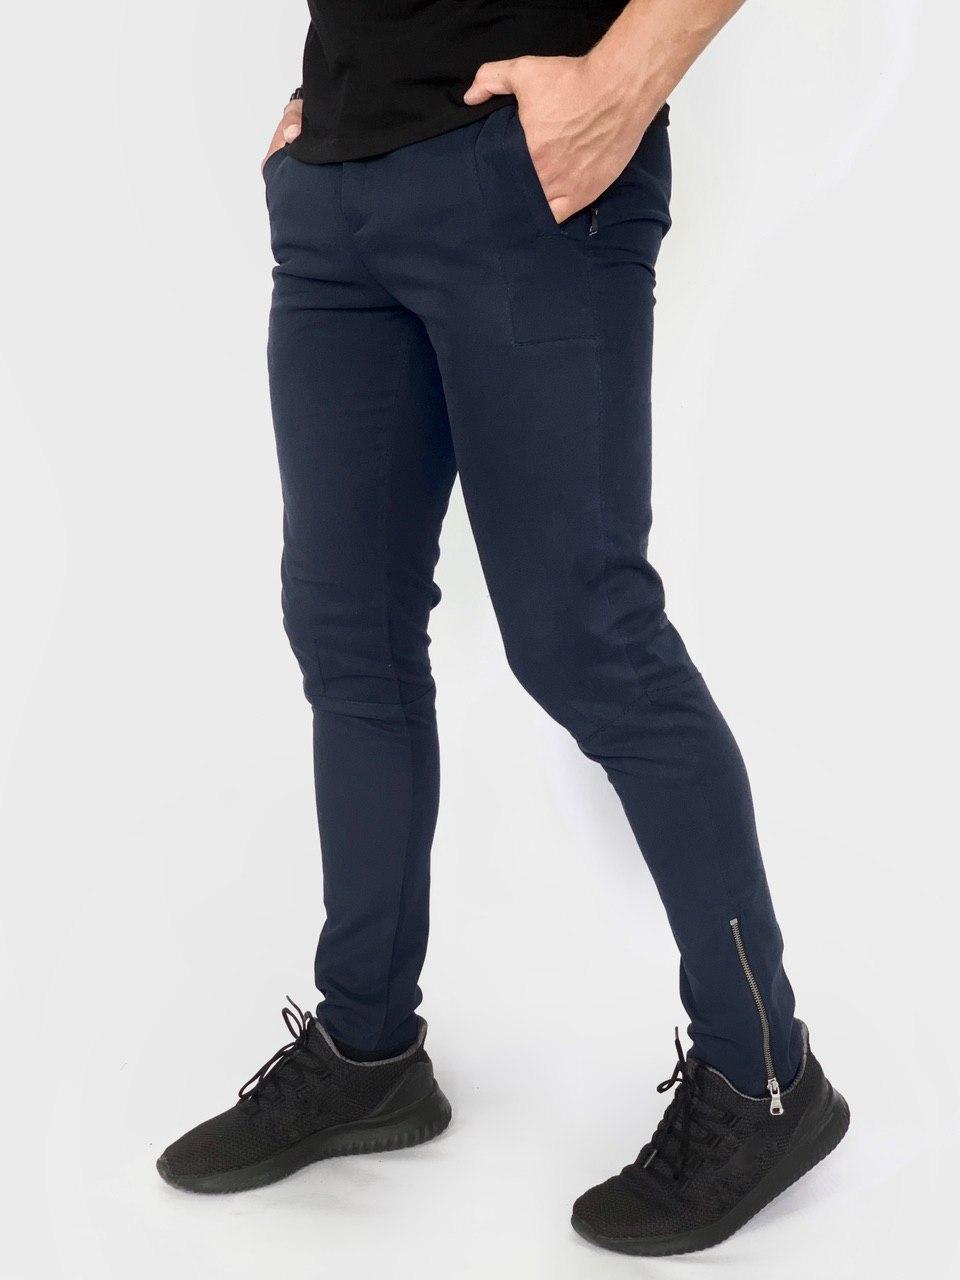 

Котоновые штаны Intruder "Strider" S Синие (1595932353)